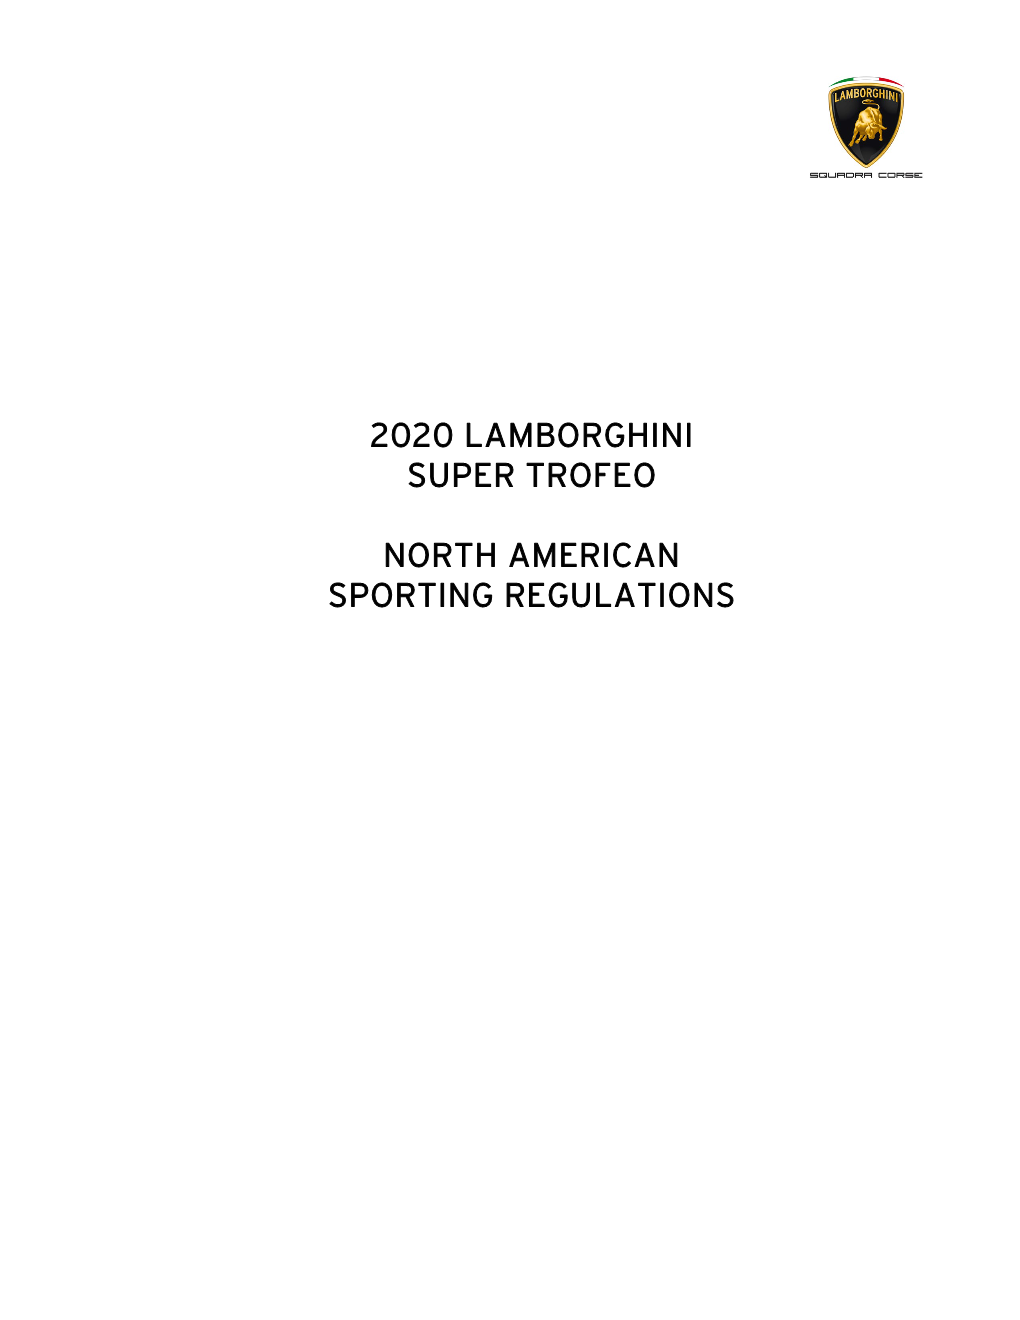 2020 Lamborghini Super Trofeo North American